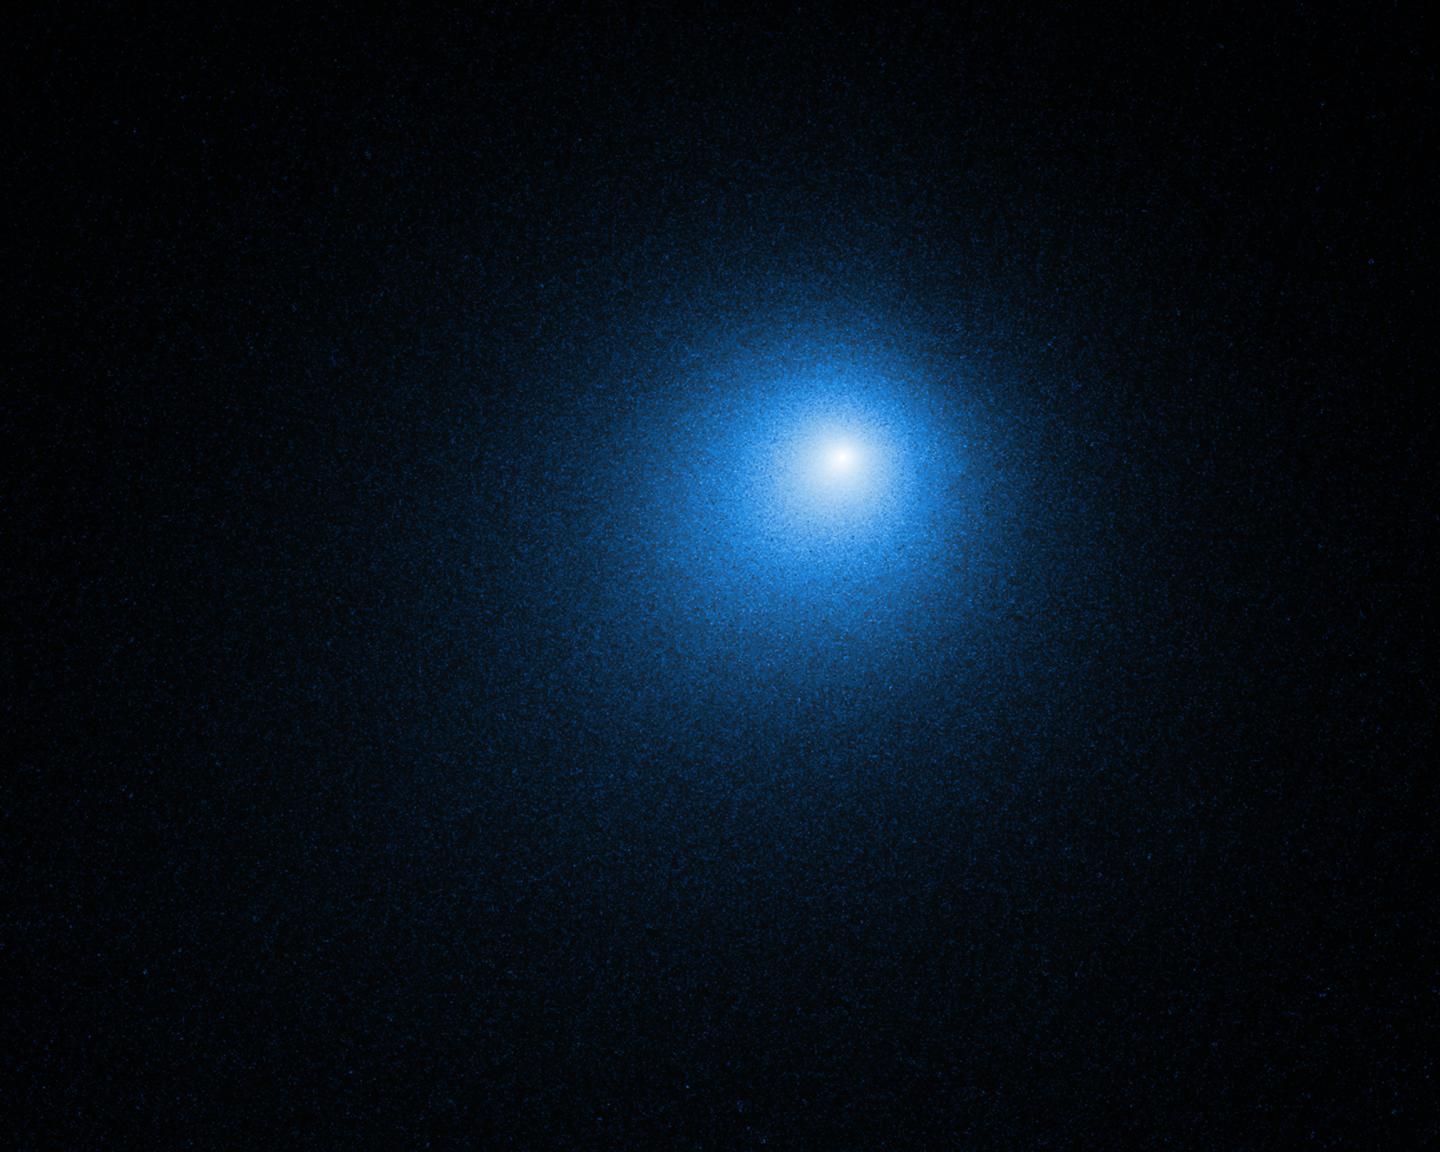 Hubble Image of Comet 46P/Wirtanen